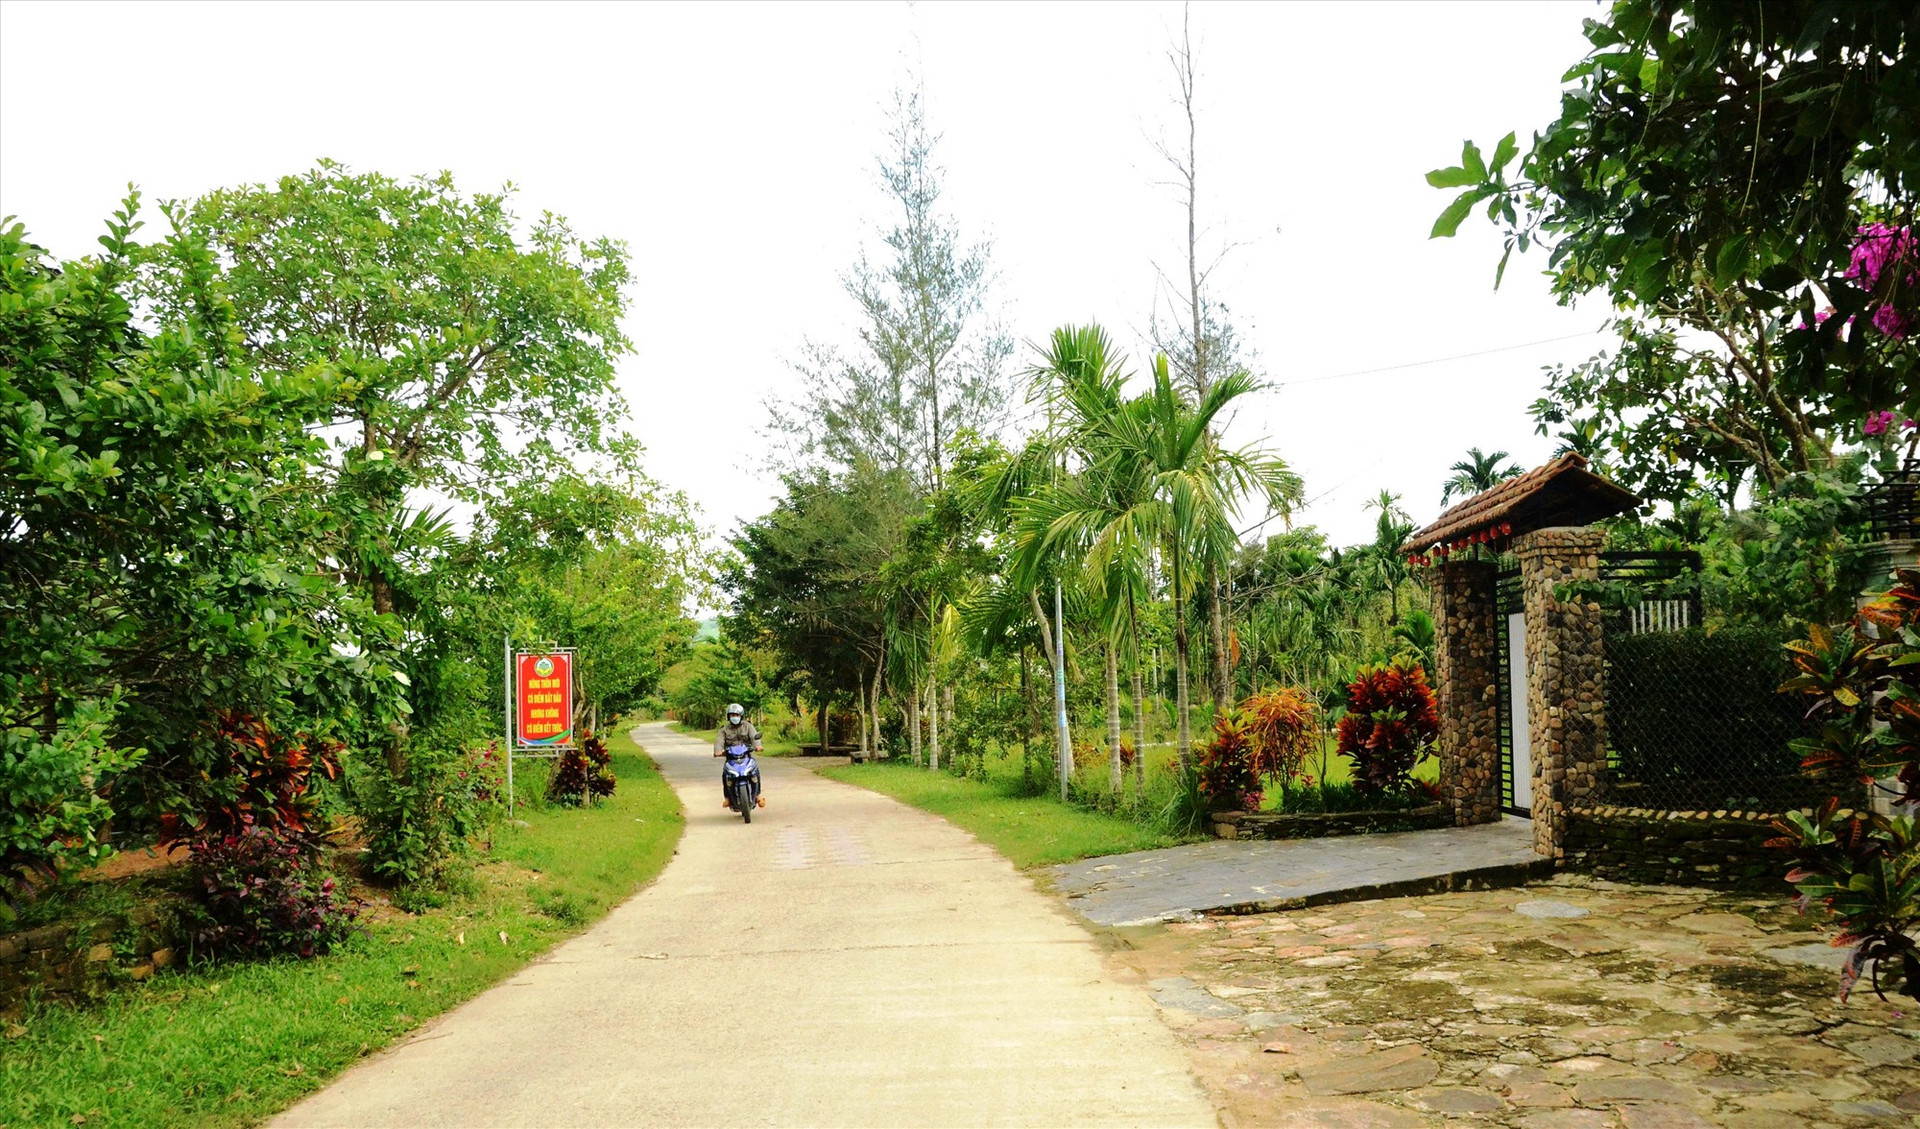 Đường dẫn vào làng được chính quyền và người dân trồng các loại cây xanh khá đẹp... Ảnh:N.HƯNG